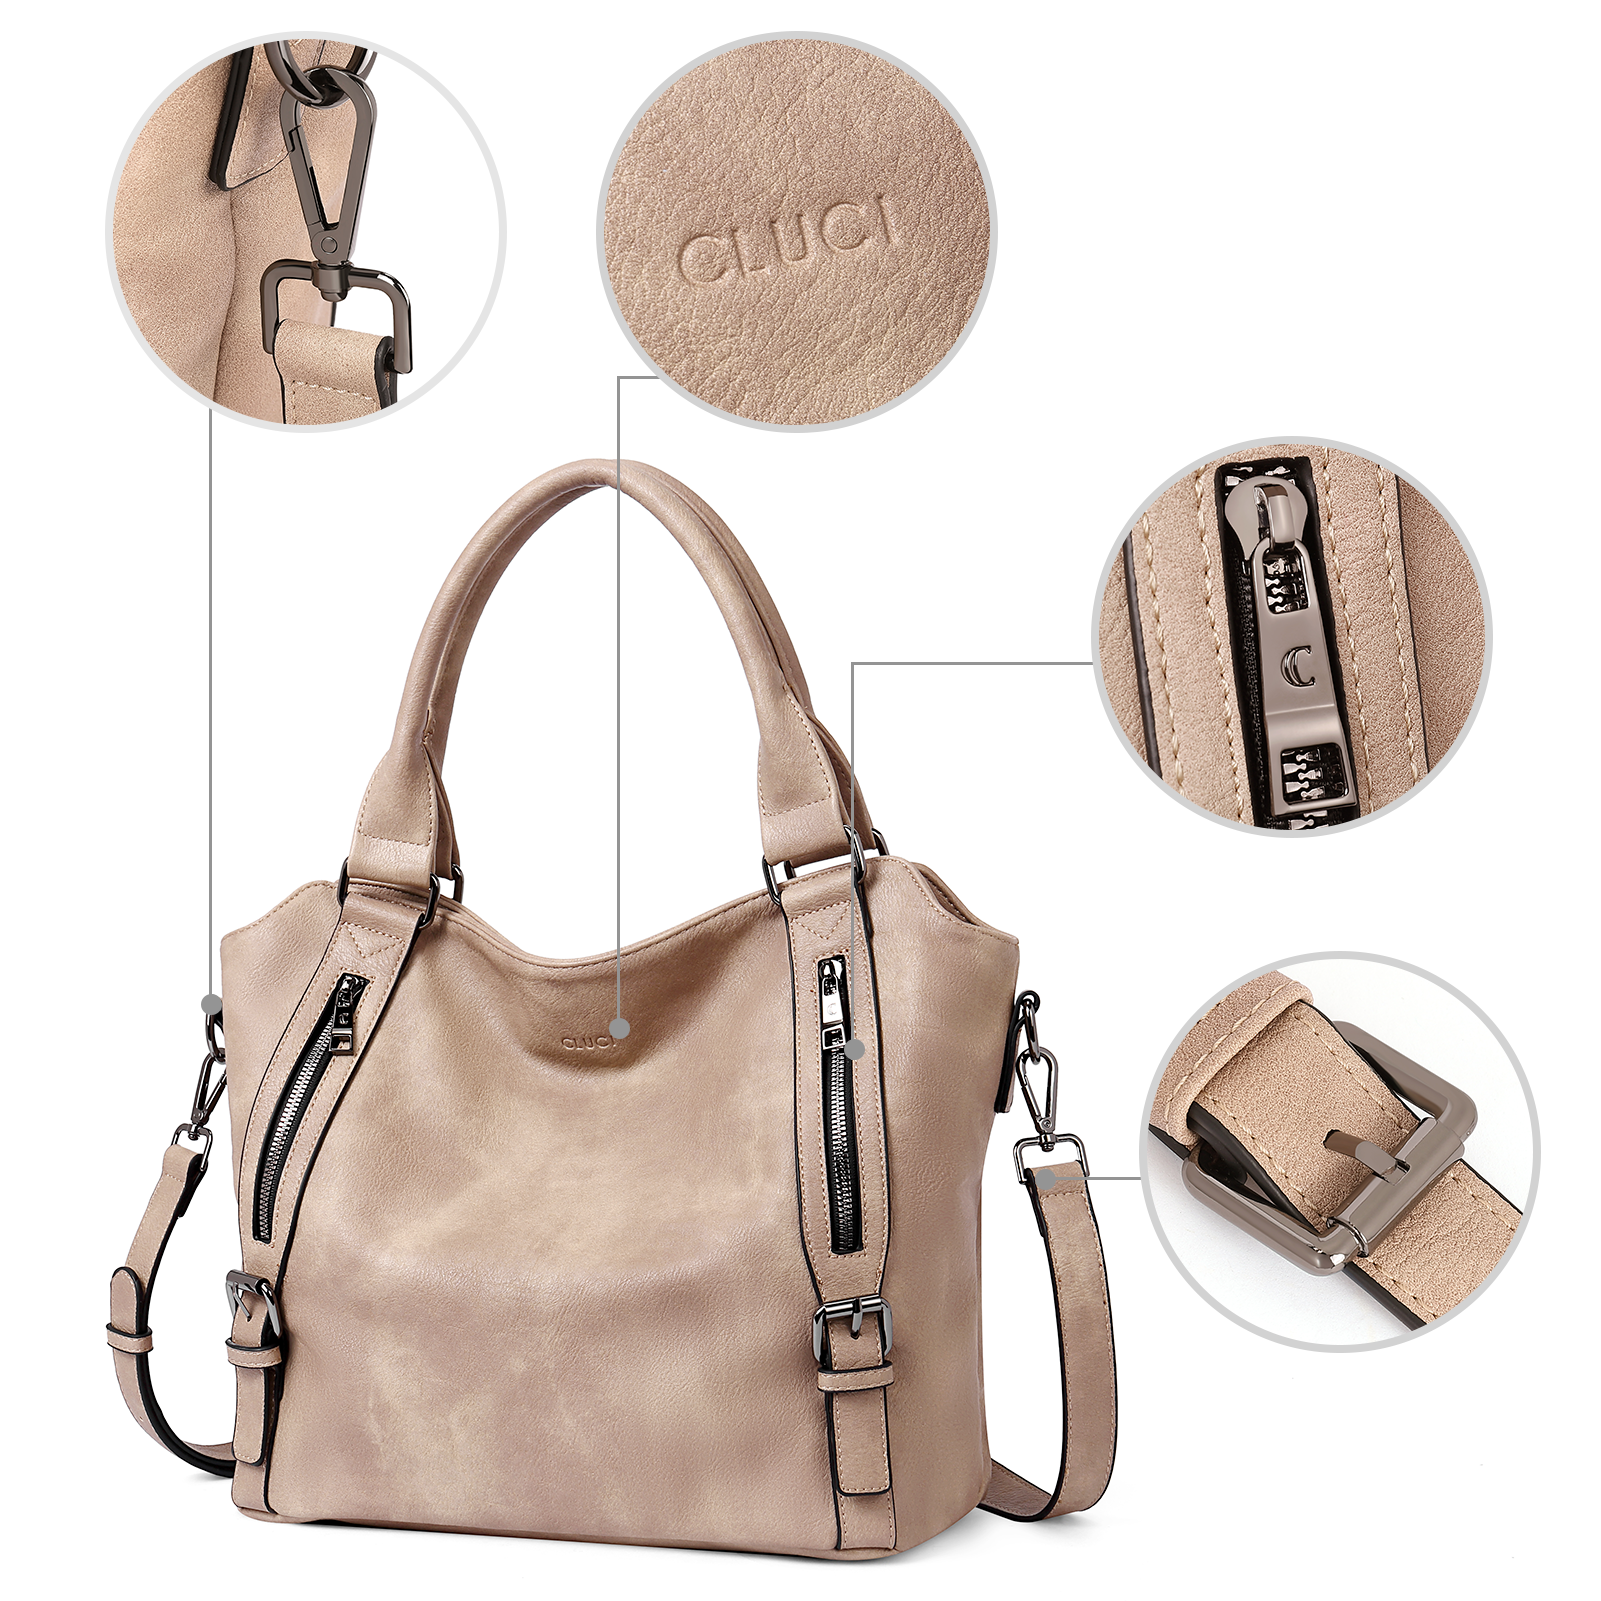 CLUCI Hobo Bags for Women Vegan Leather Handbags Large Tote Ladies Purse Shoulder Bag with Adjustable Shoulder Strap